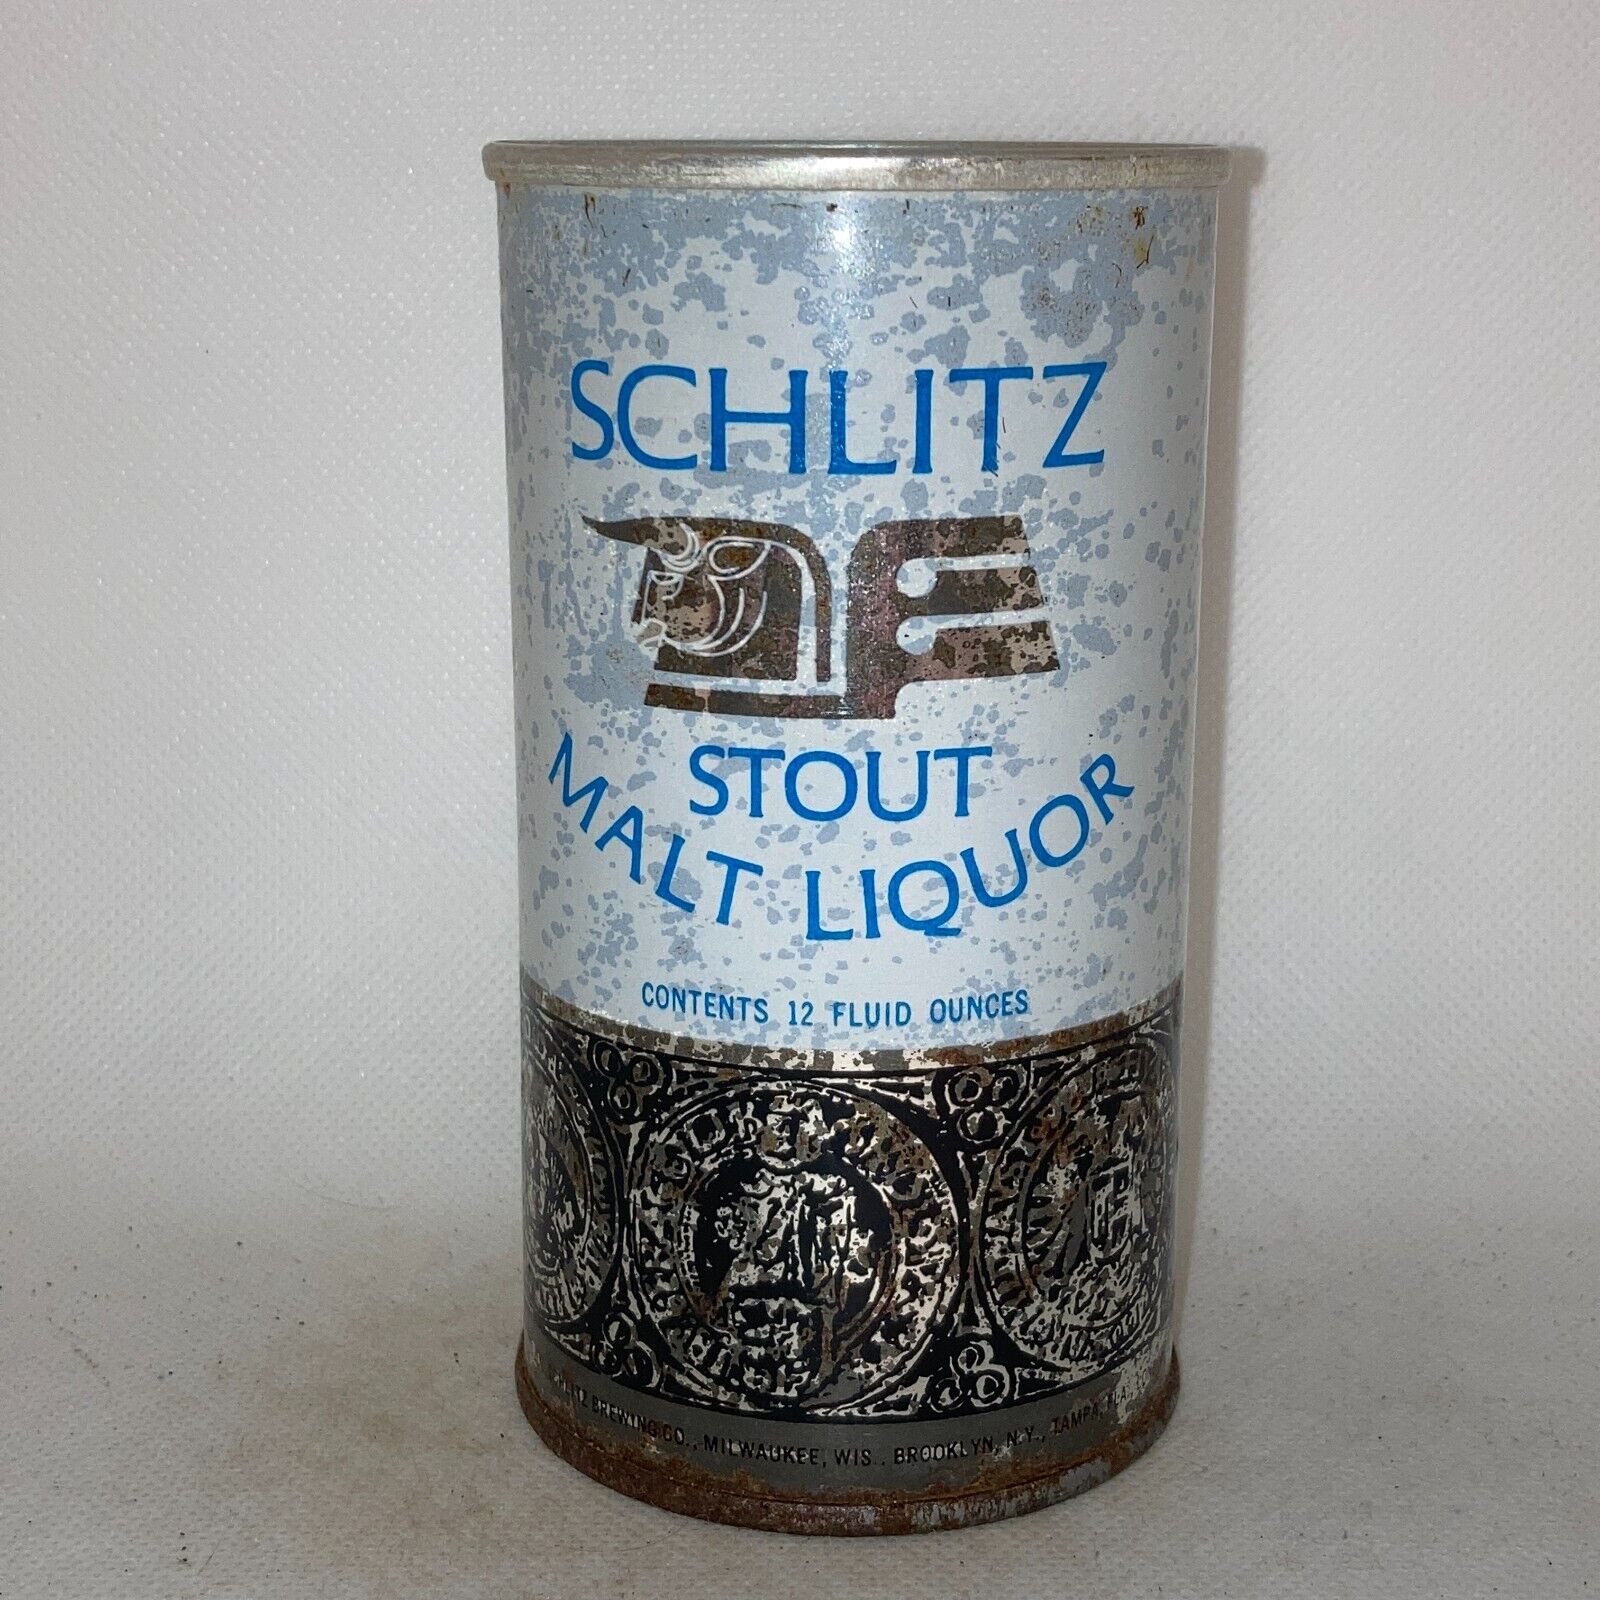 Schlitz STOUT Malt Liquor beer can, 1970